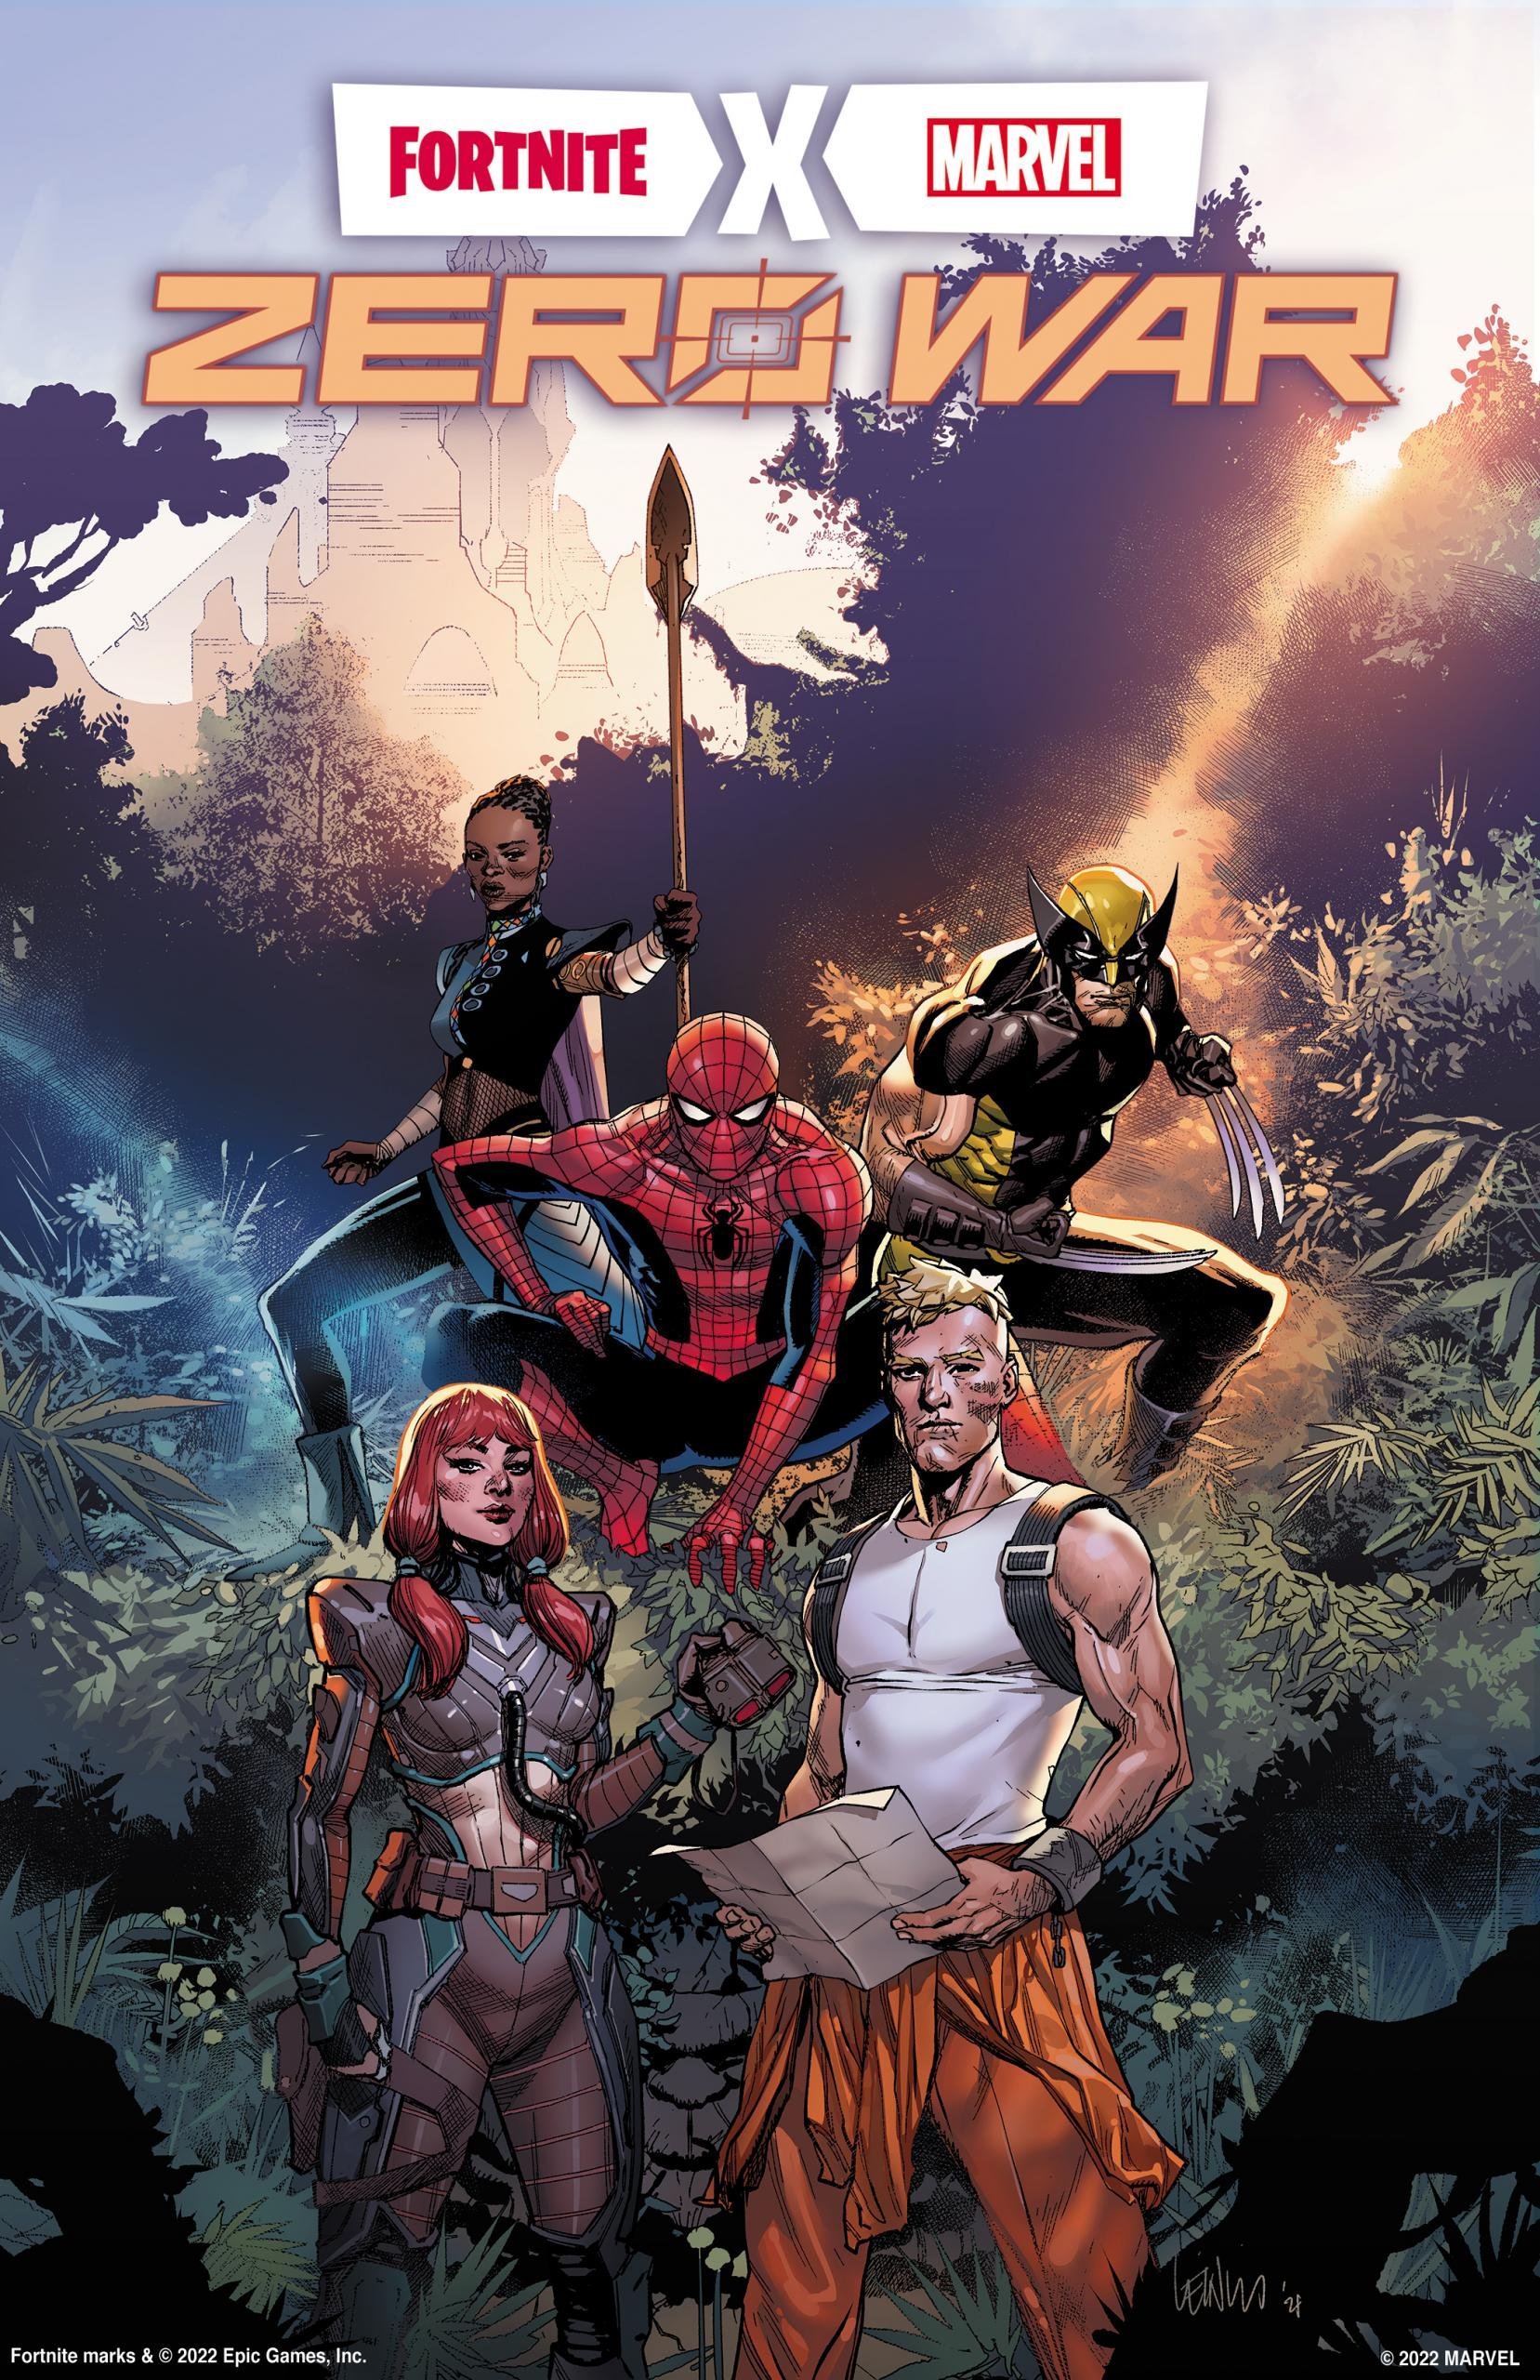 Cover di Fortnite X Marvel: Guerra Zero 1 di Leinil Francis YU